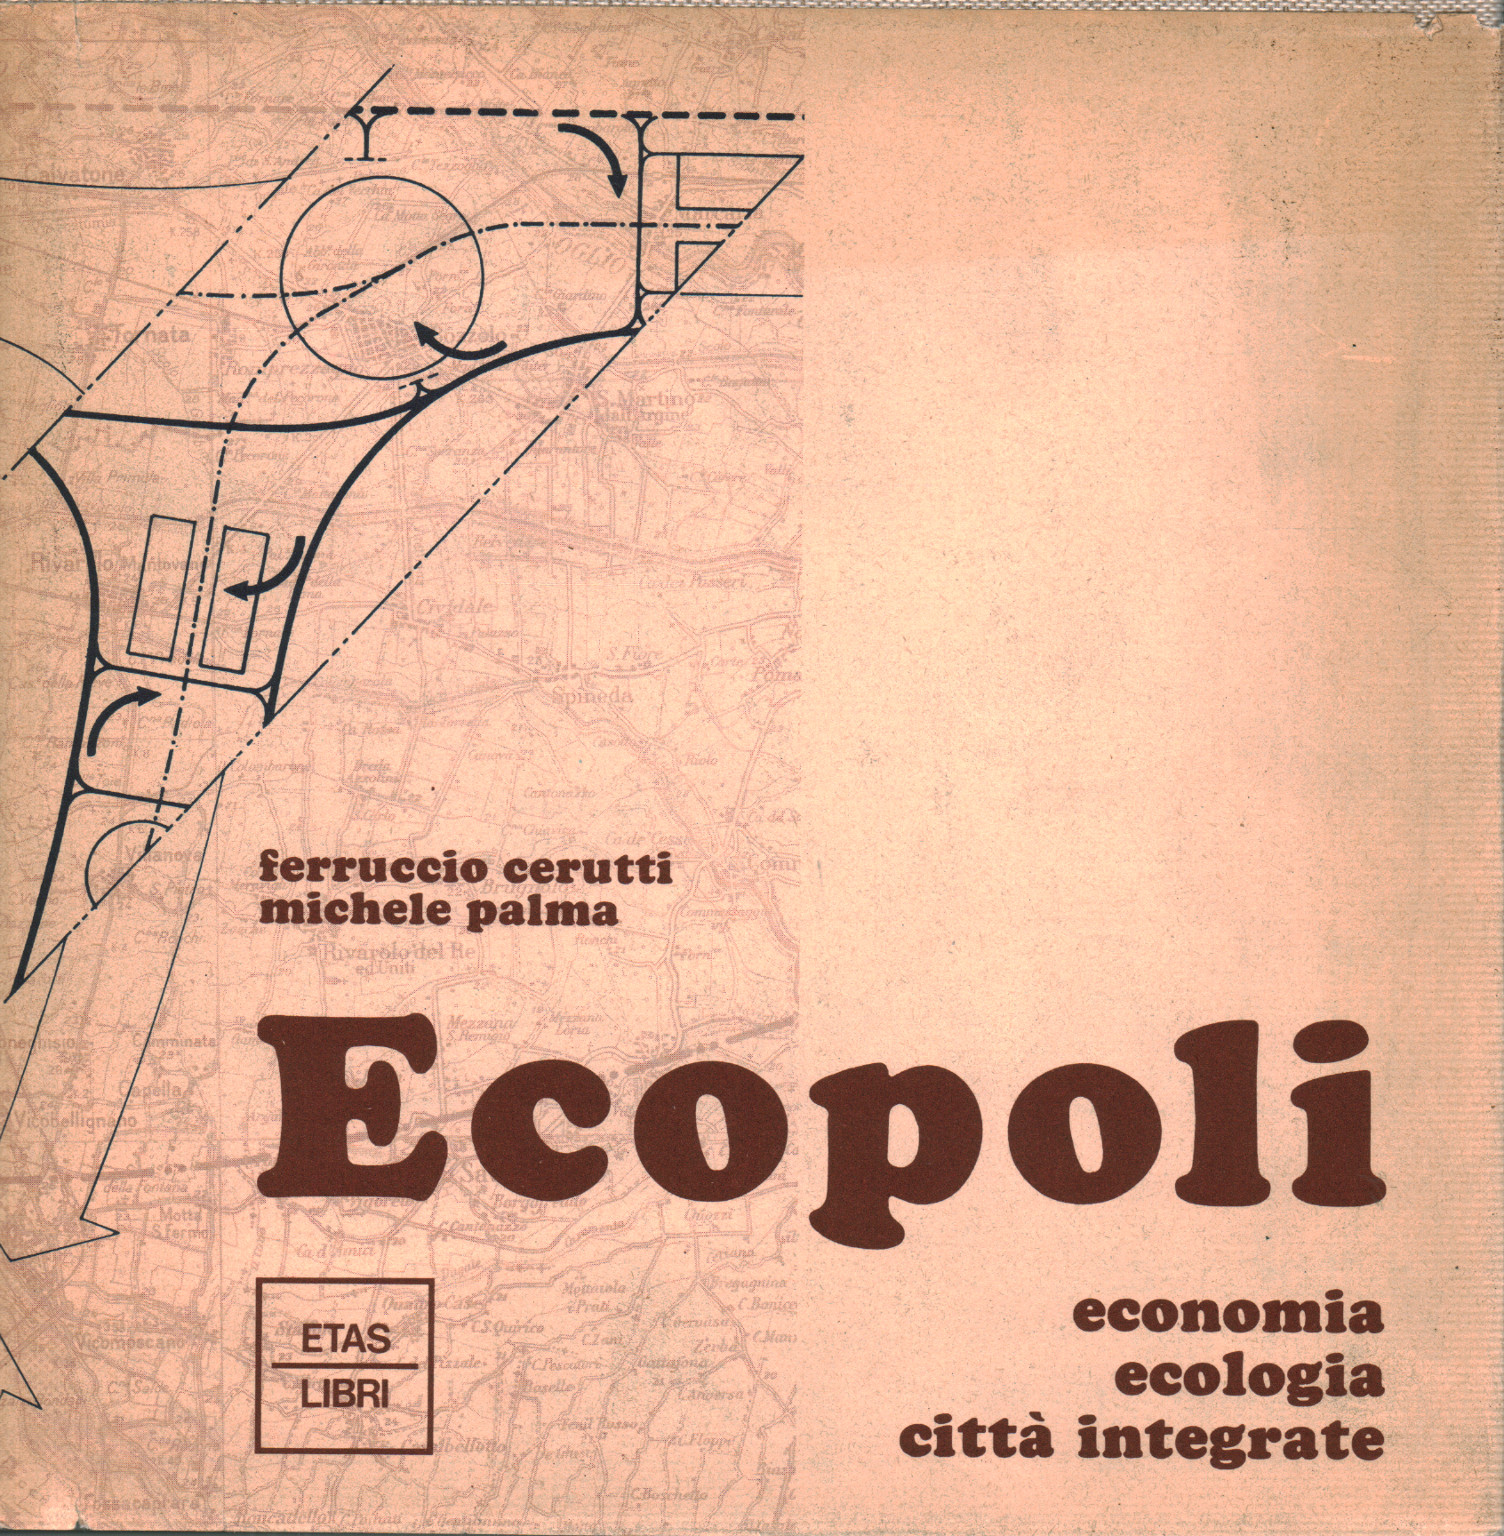 Ecopoli, s.a.